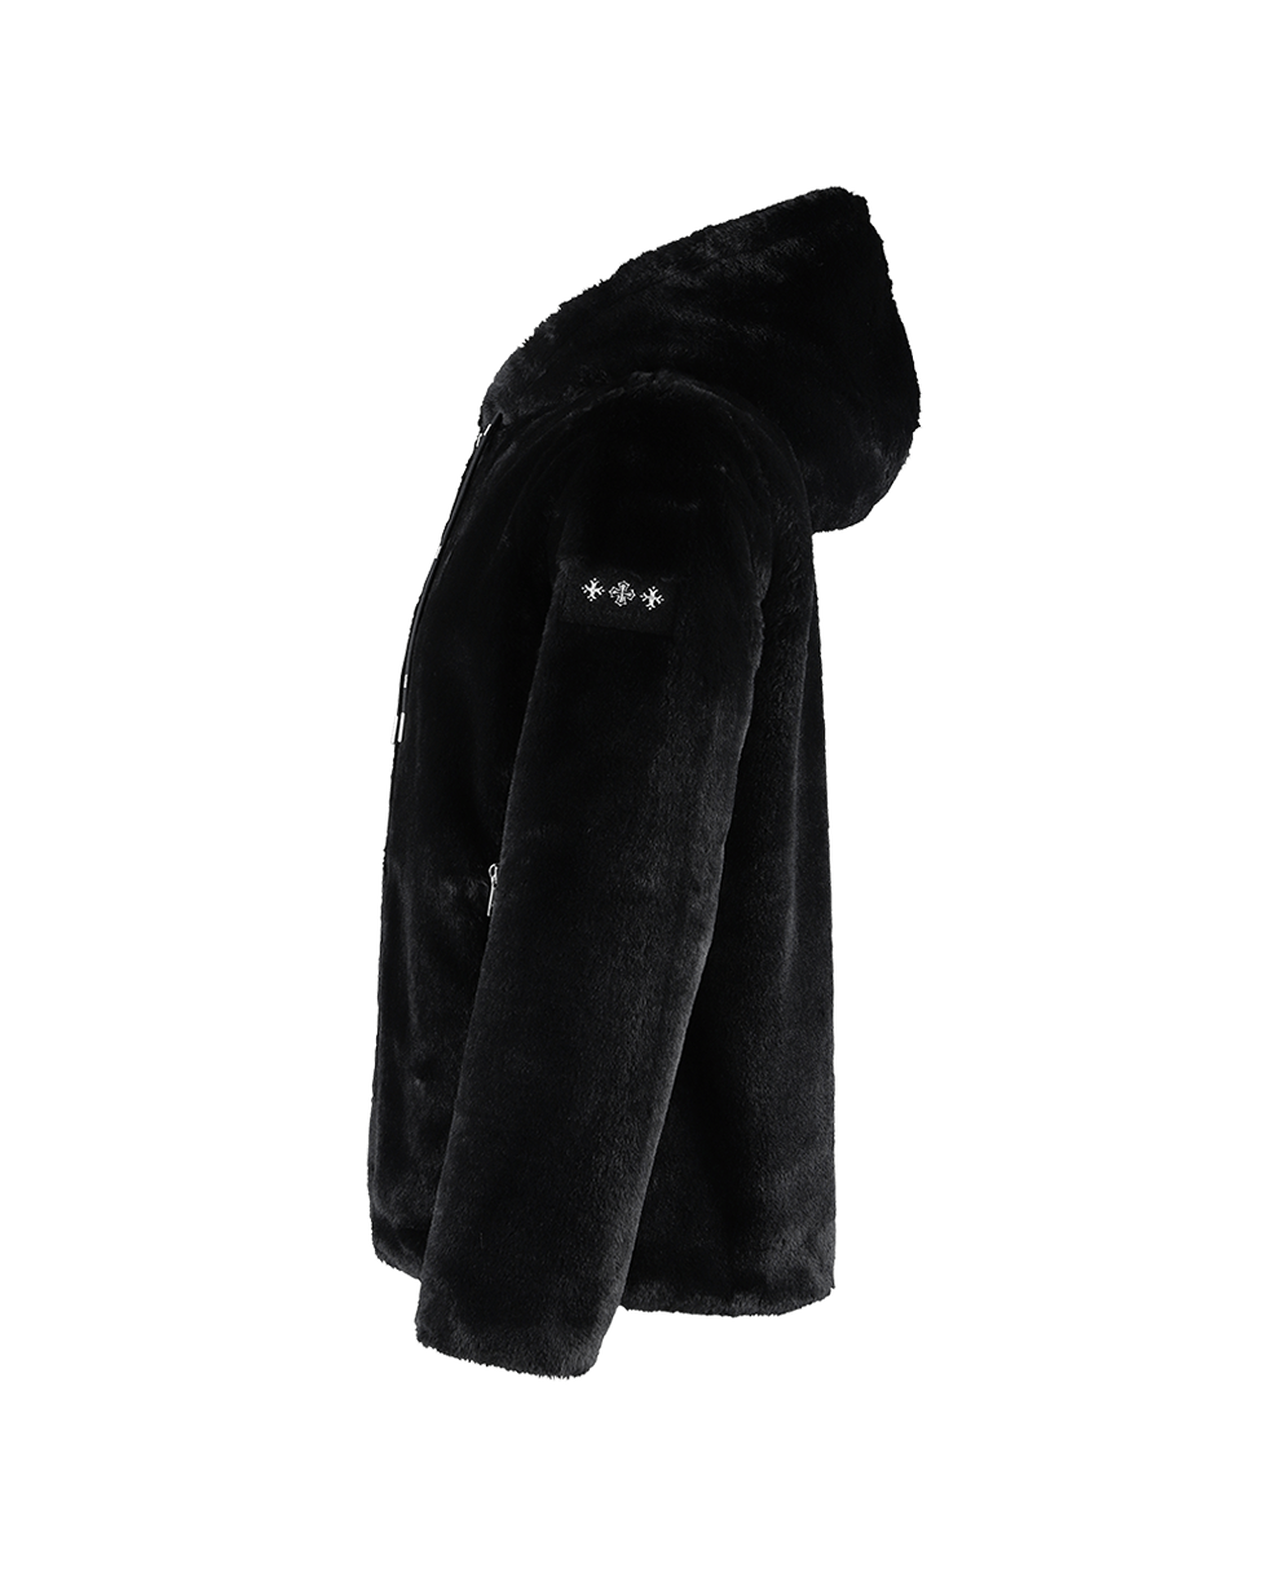 BOMOS Men's Jacket,BLACK, large image number 1